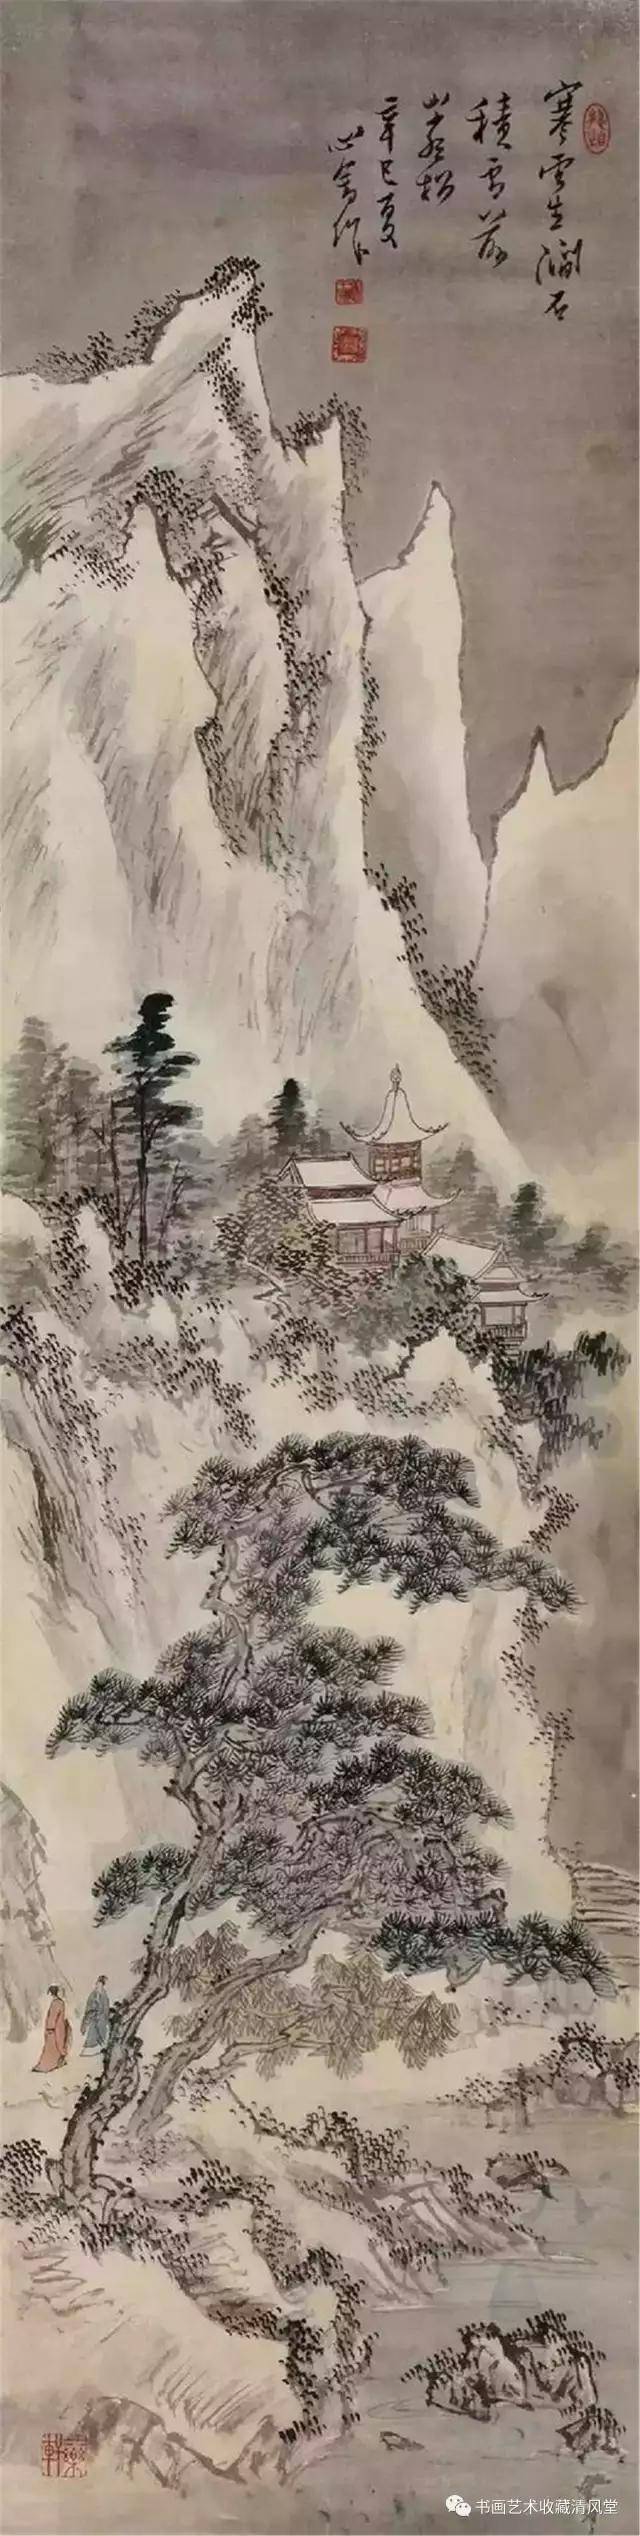 国画:溥儒 雪景山水画欣赏